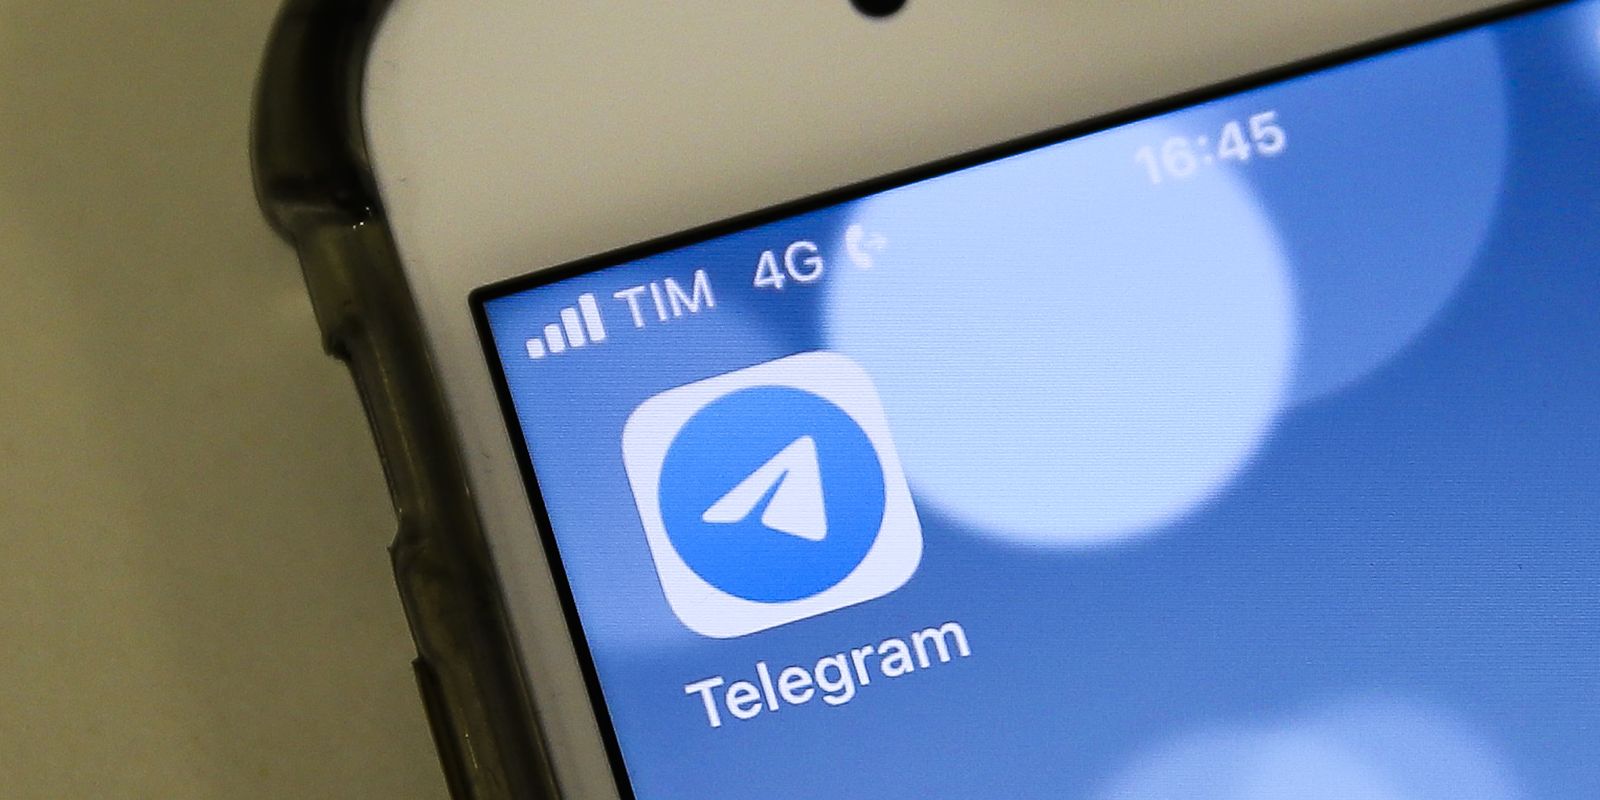 Aplicativo de mensagens Telegram